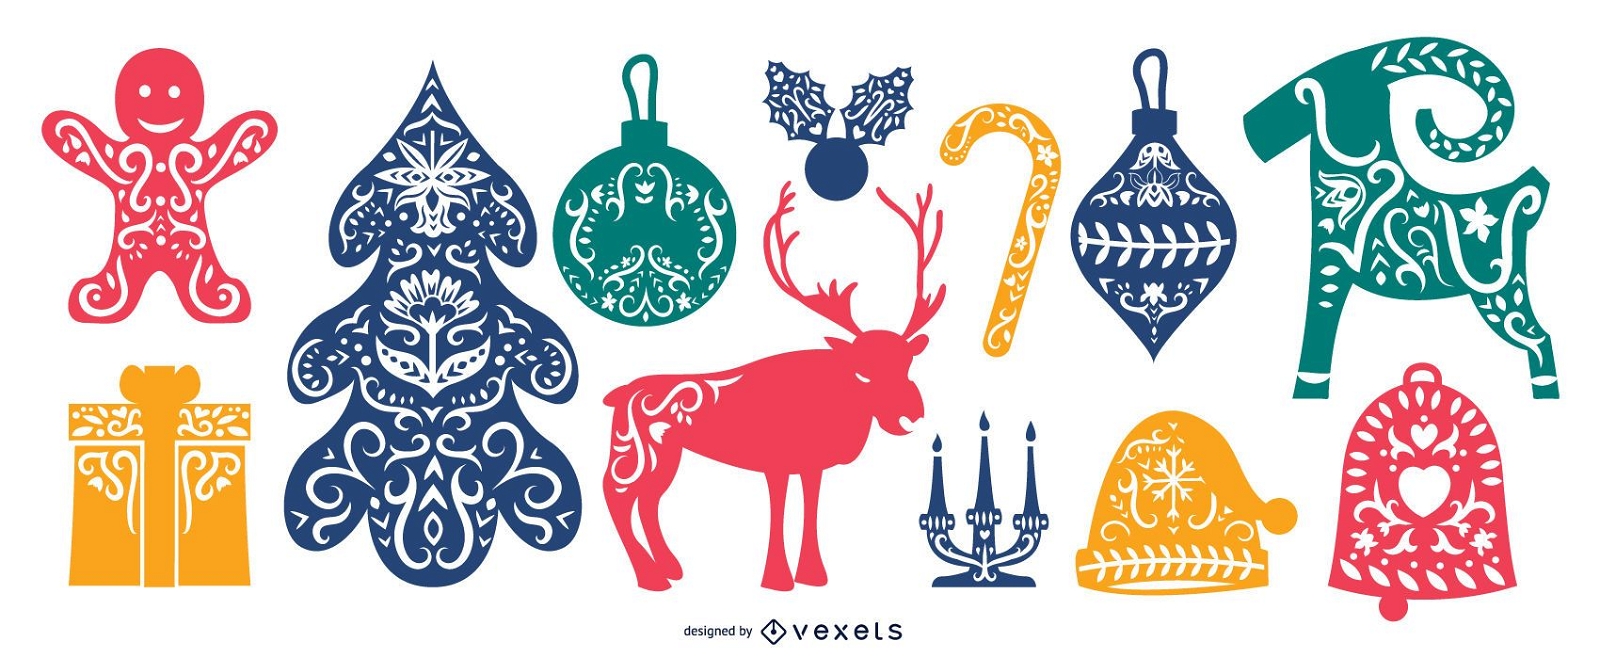 Paquete de elementos navideños populares escandinavos